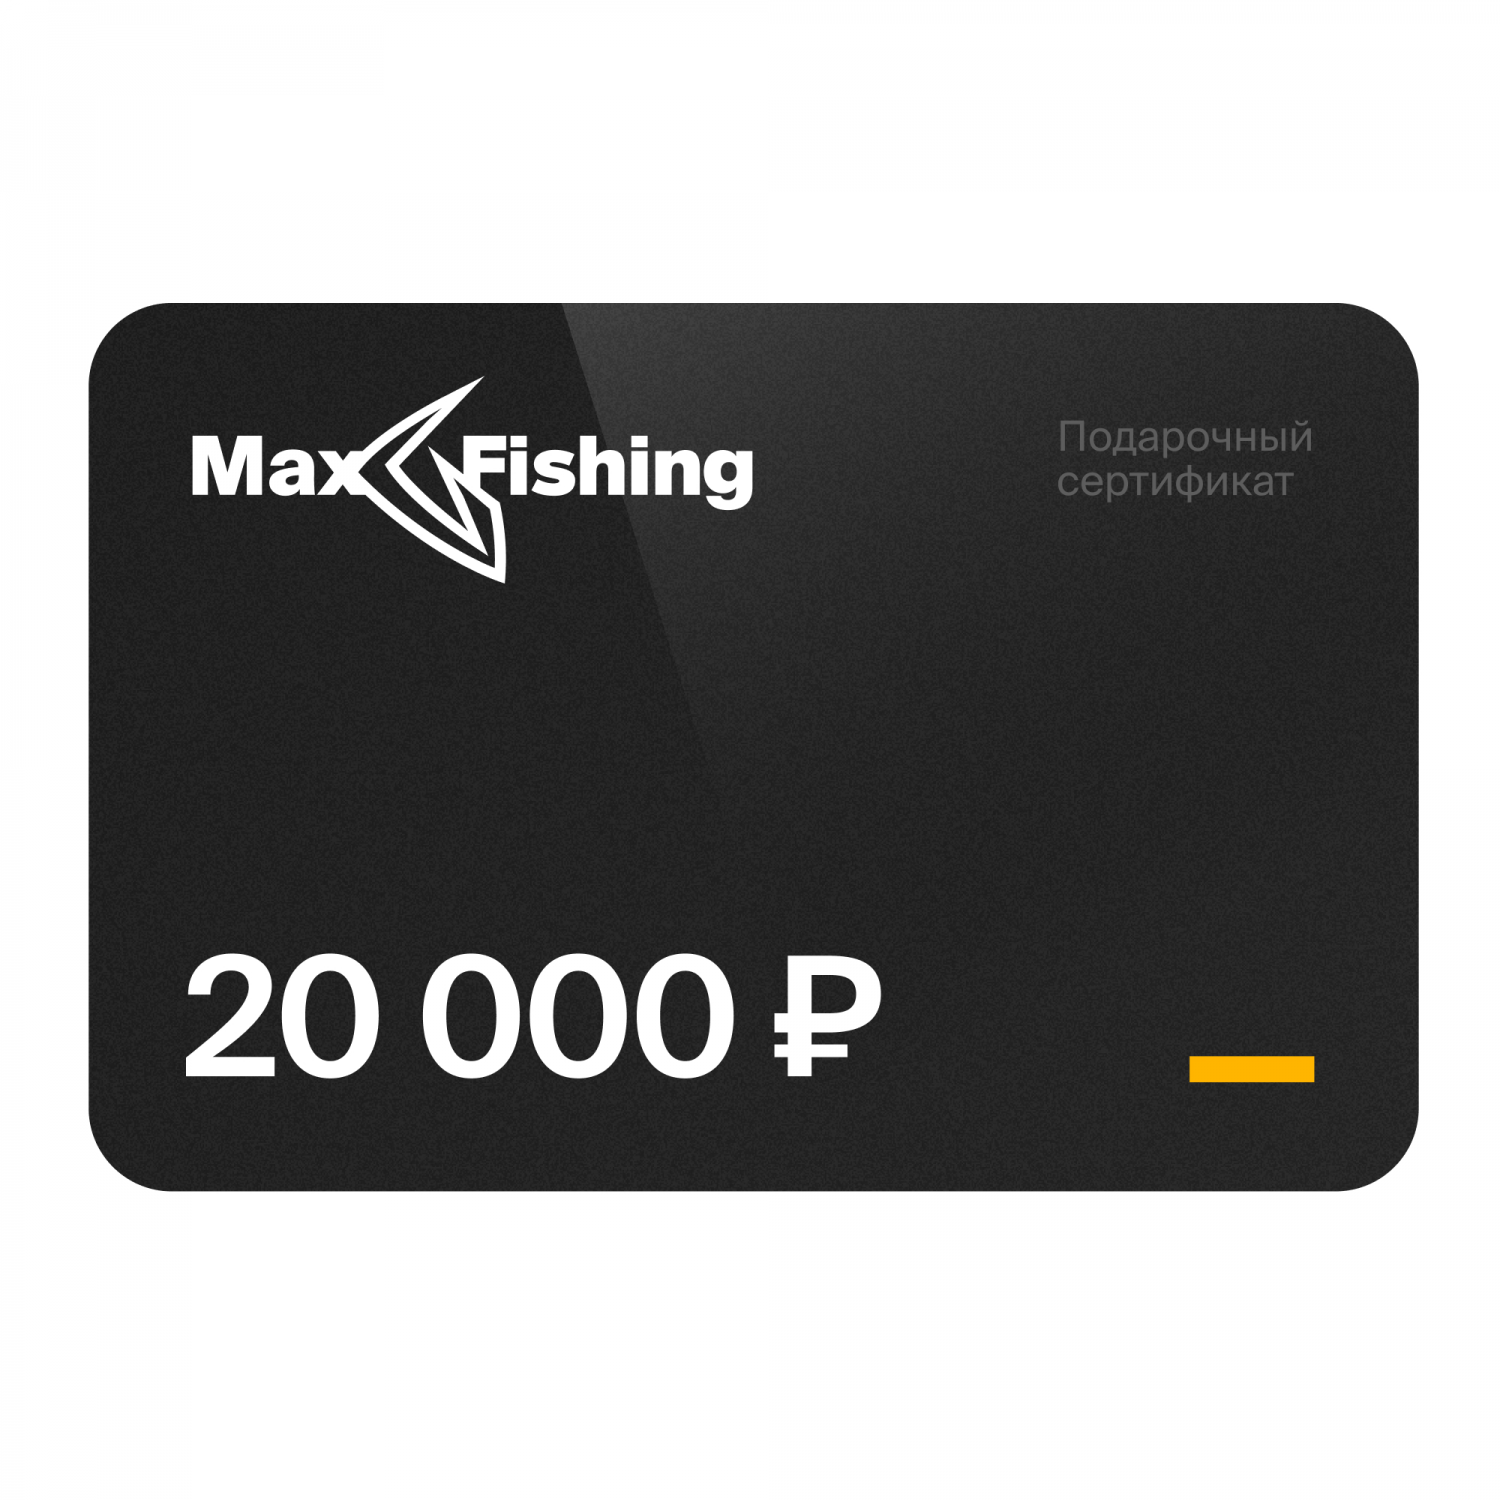 Подарочный сертификат MaxFishing 20 000 ₽ подарочный сертификат на 10 000 рублей